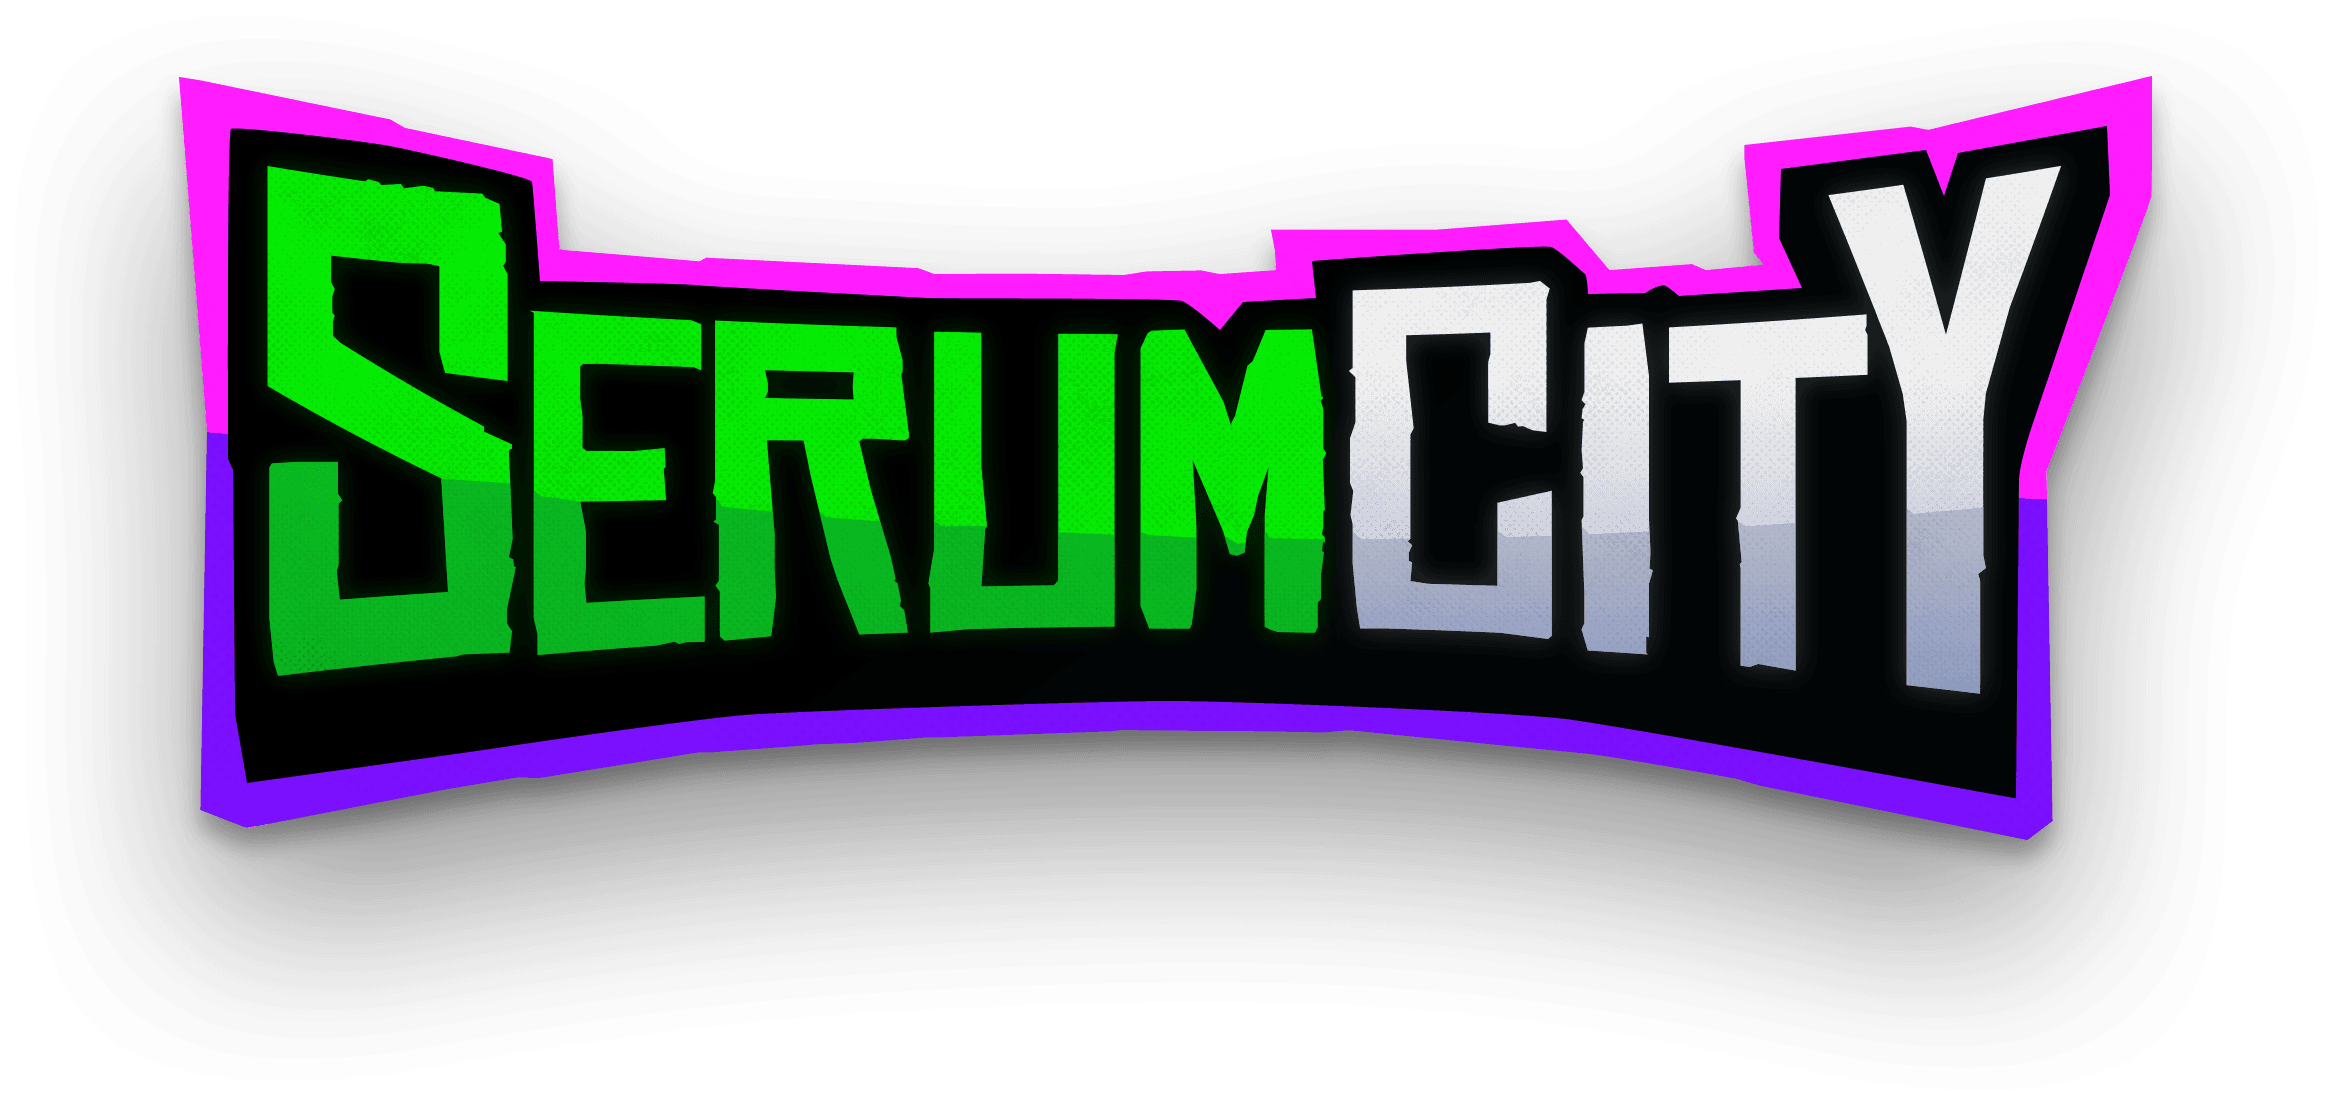 Serum City logo.png